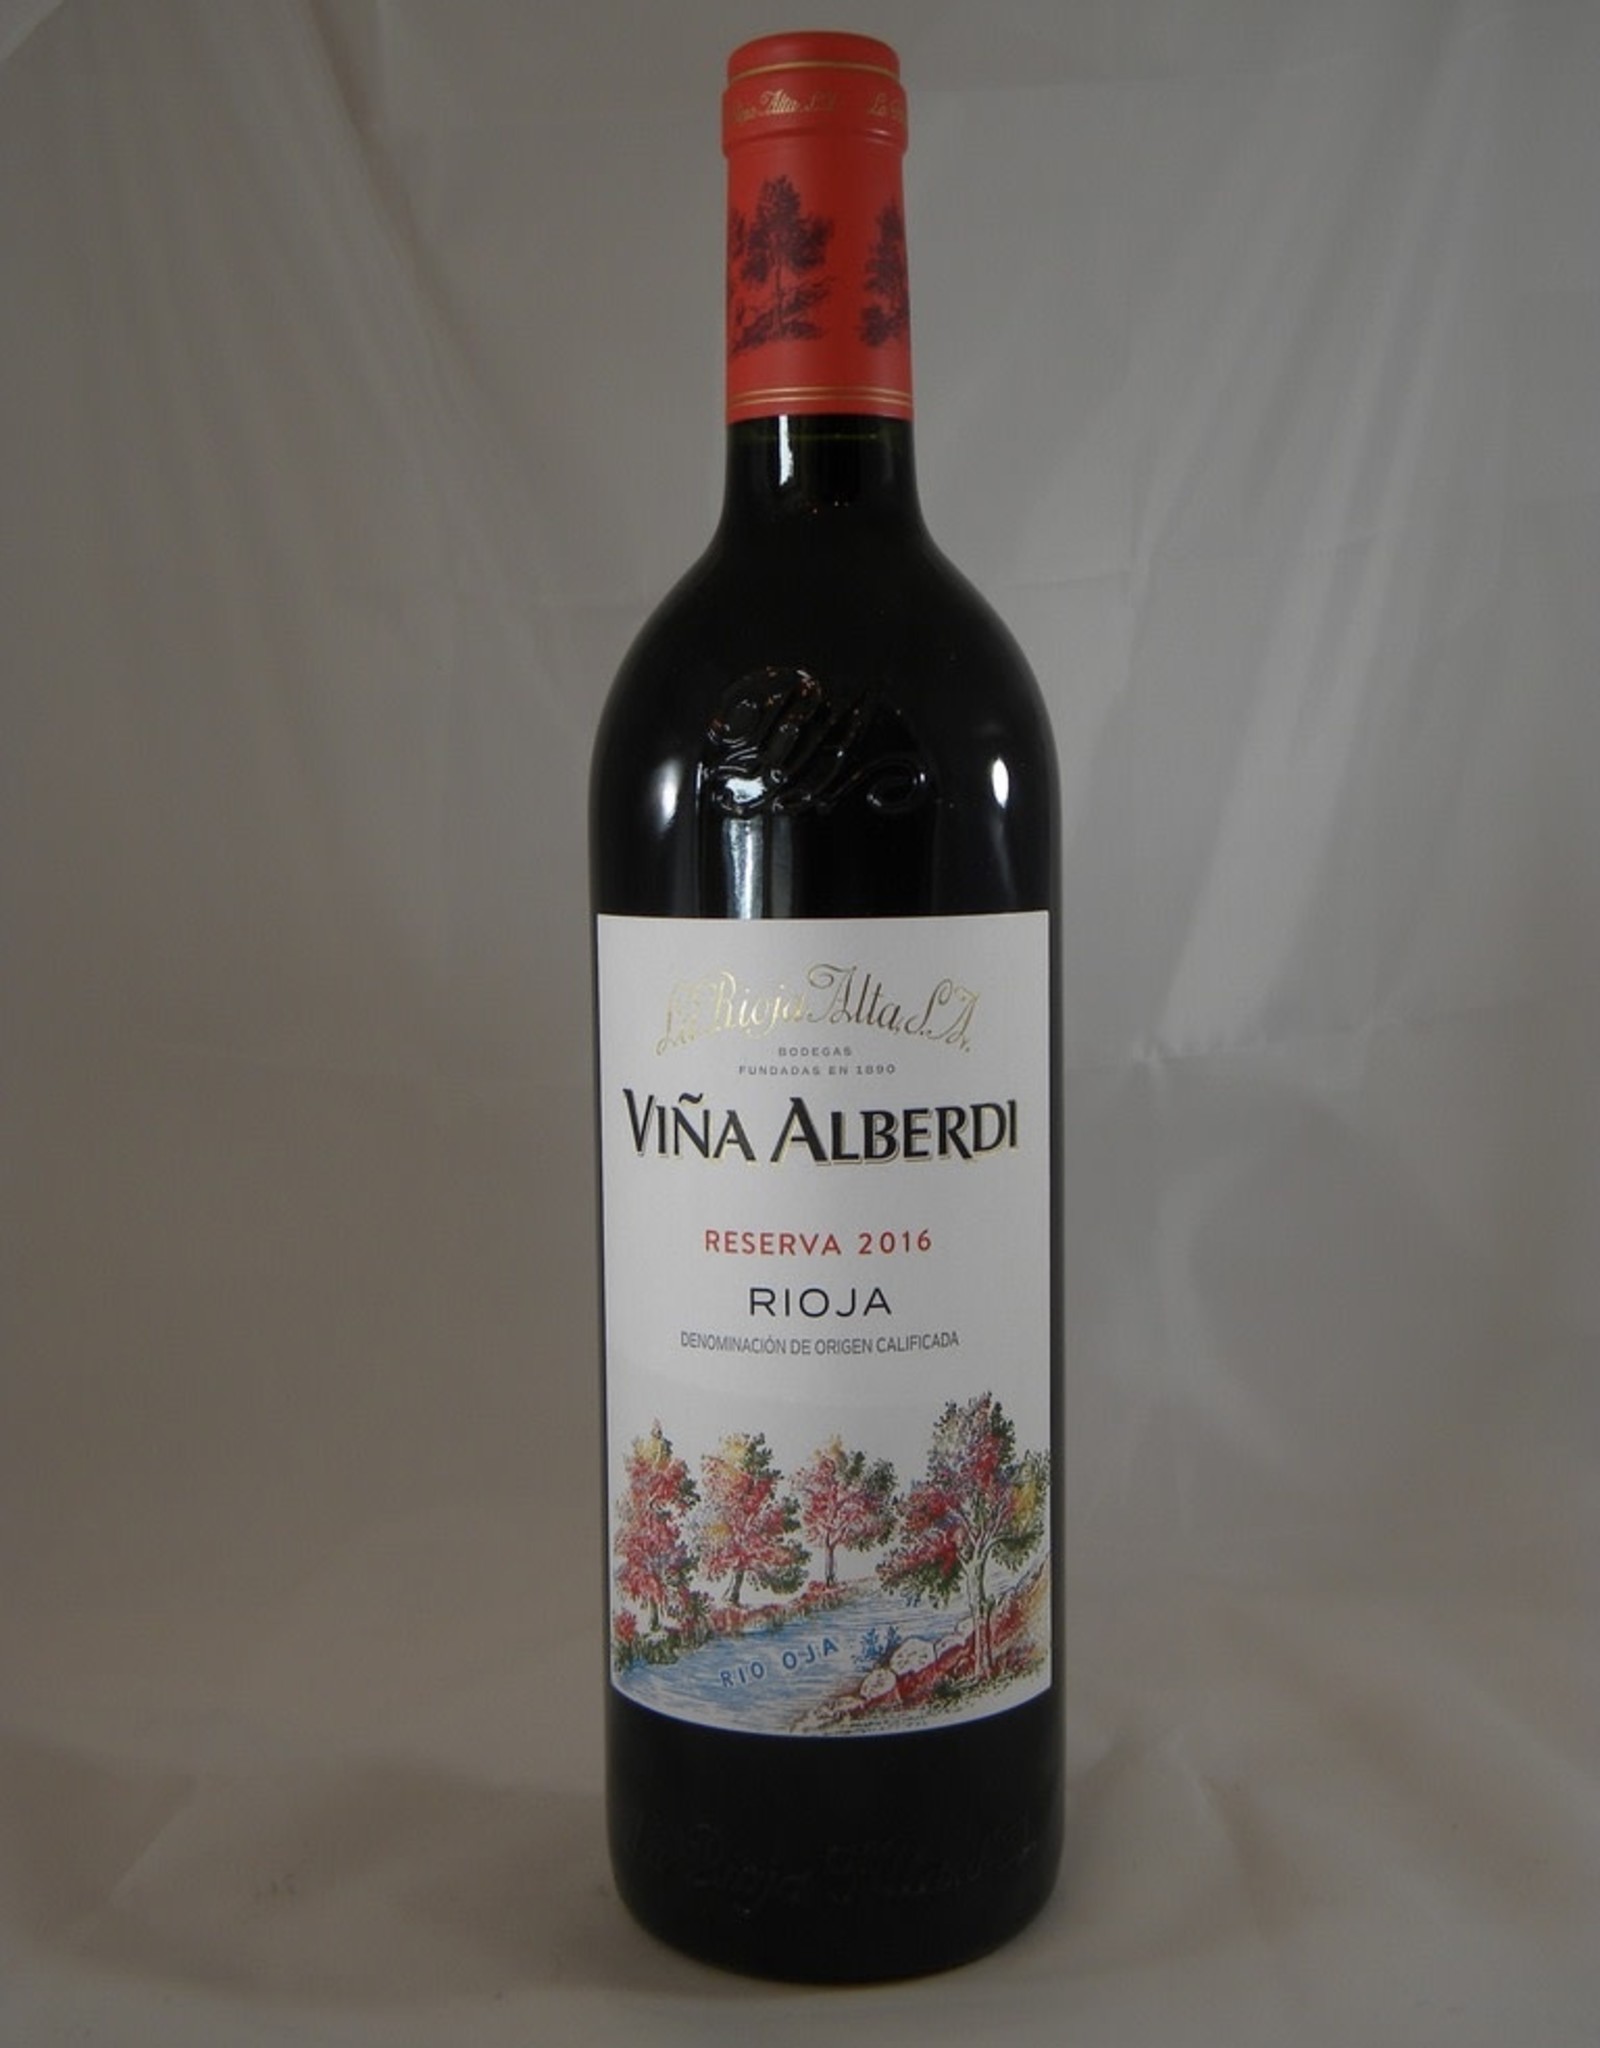 La Rioja Alta La Rioja Alta Rioja Vina Alberdi Reserva 2016